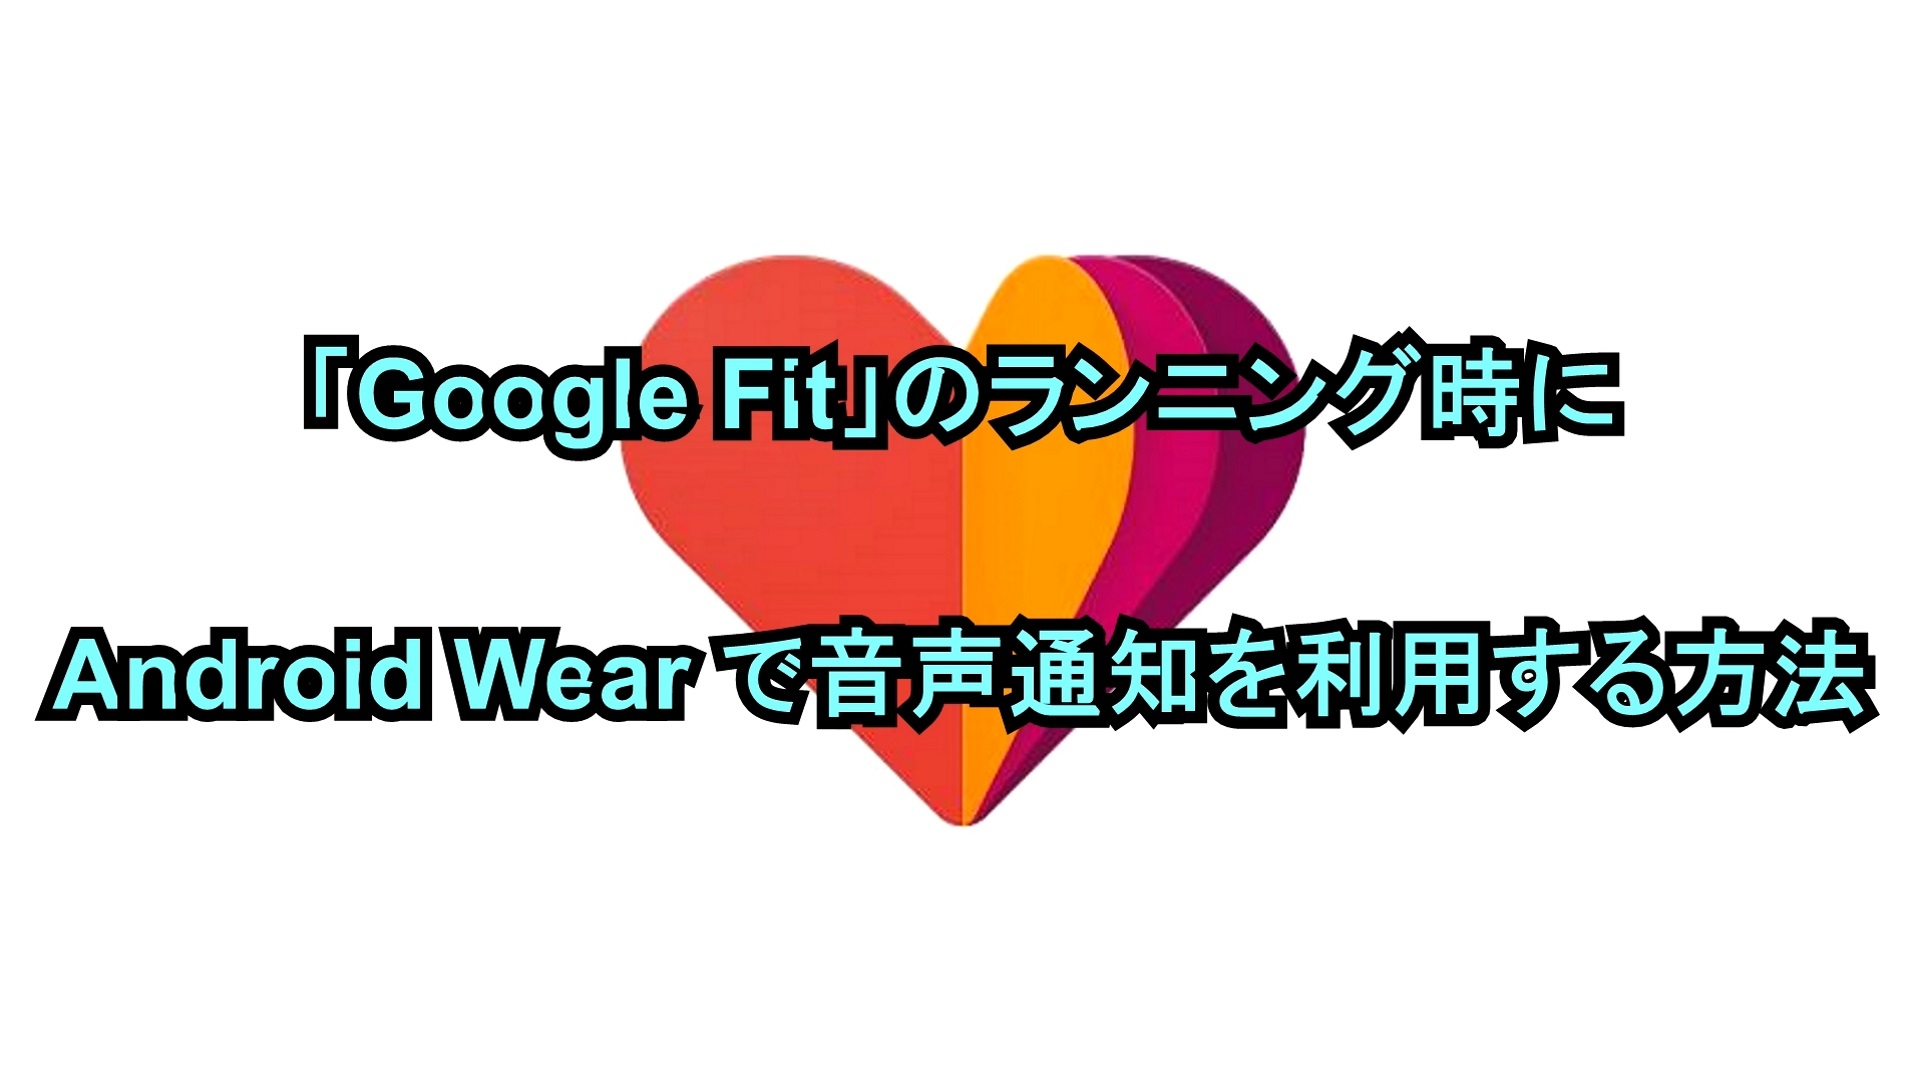 「Google Fit」のランニング時にAndroid Wearで音声通知を利用する方法